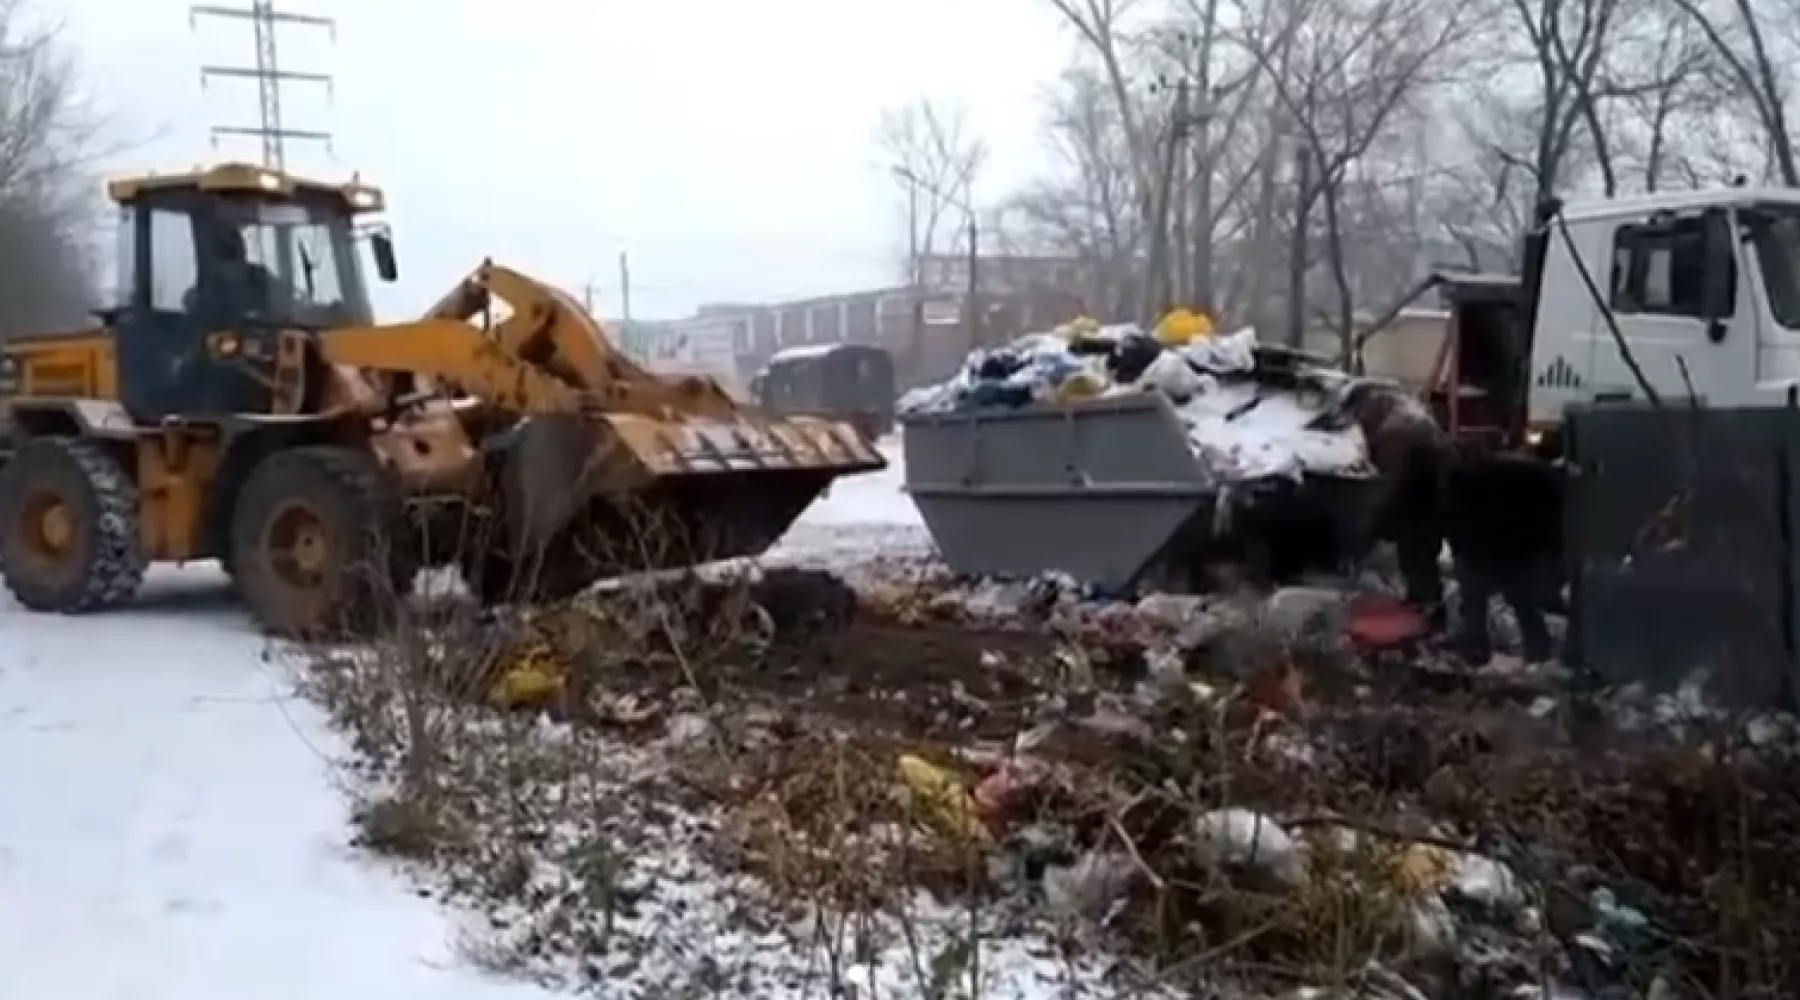 Прокуратура Алтайского края контролирует ситуацию с вывозом мусора в Бийске